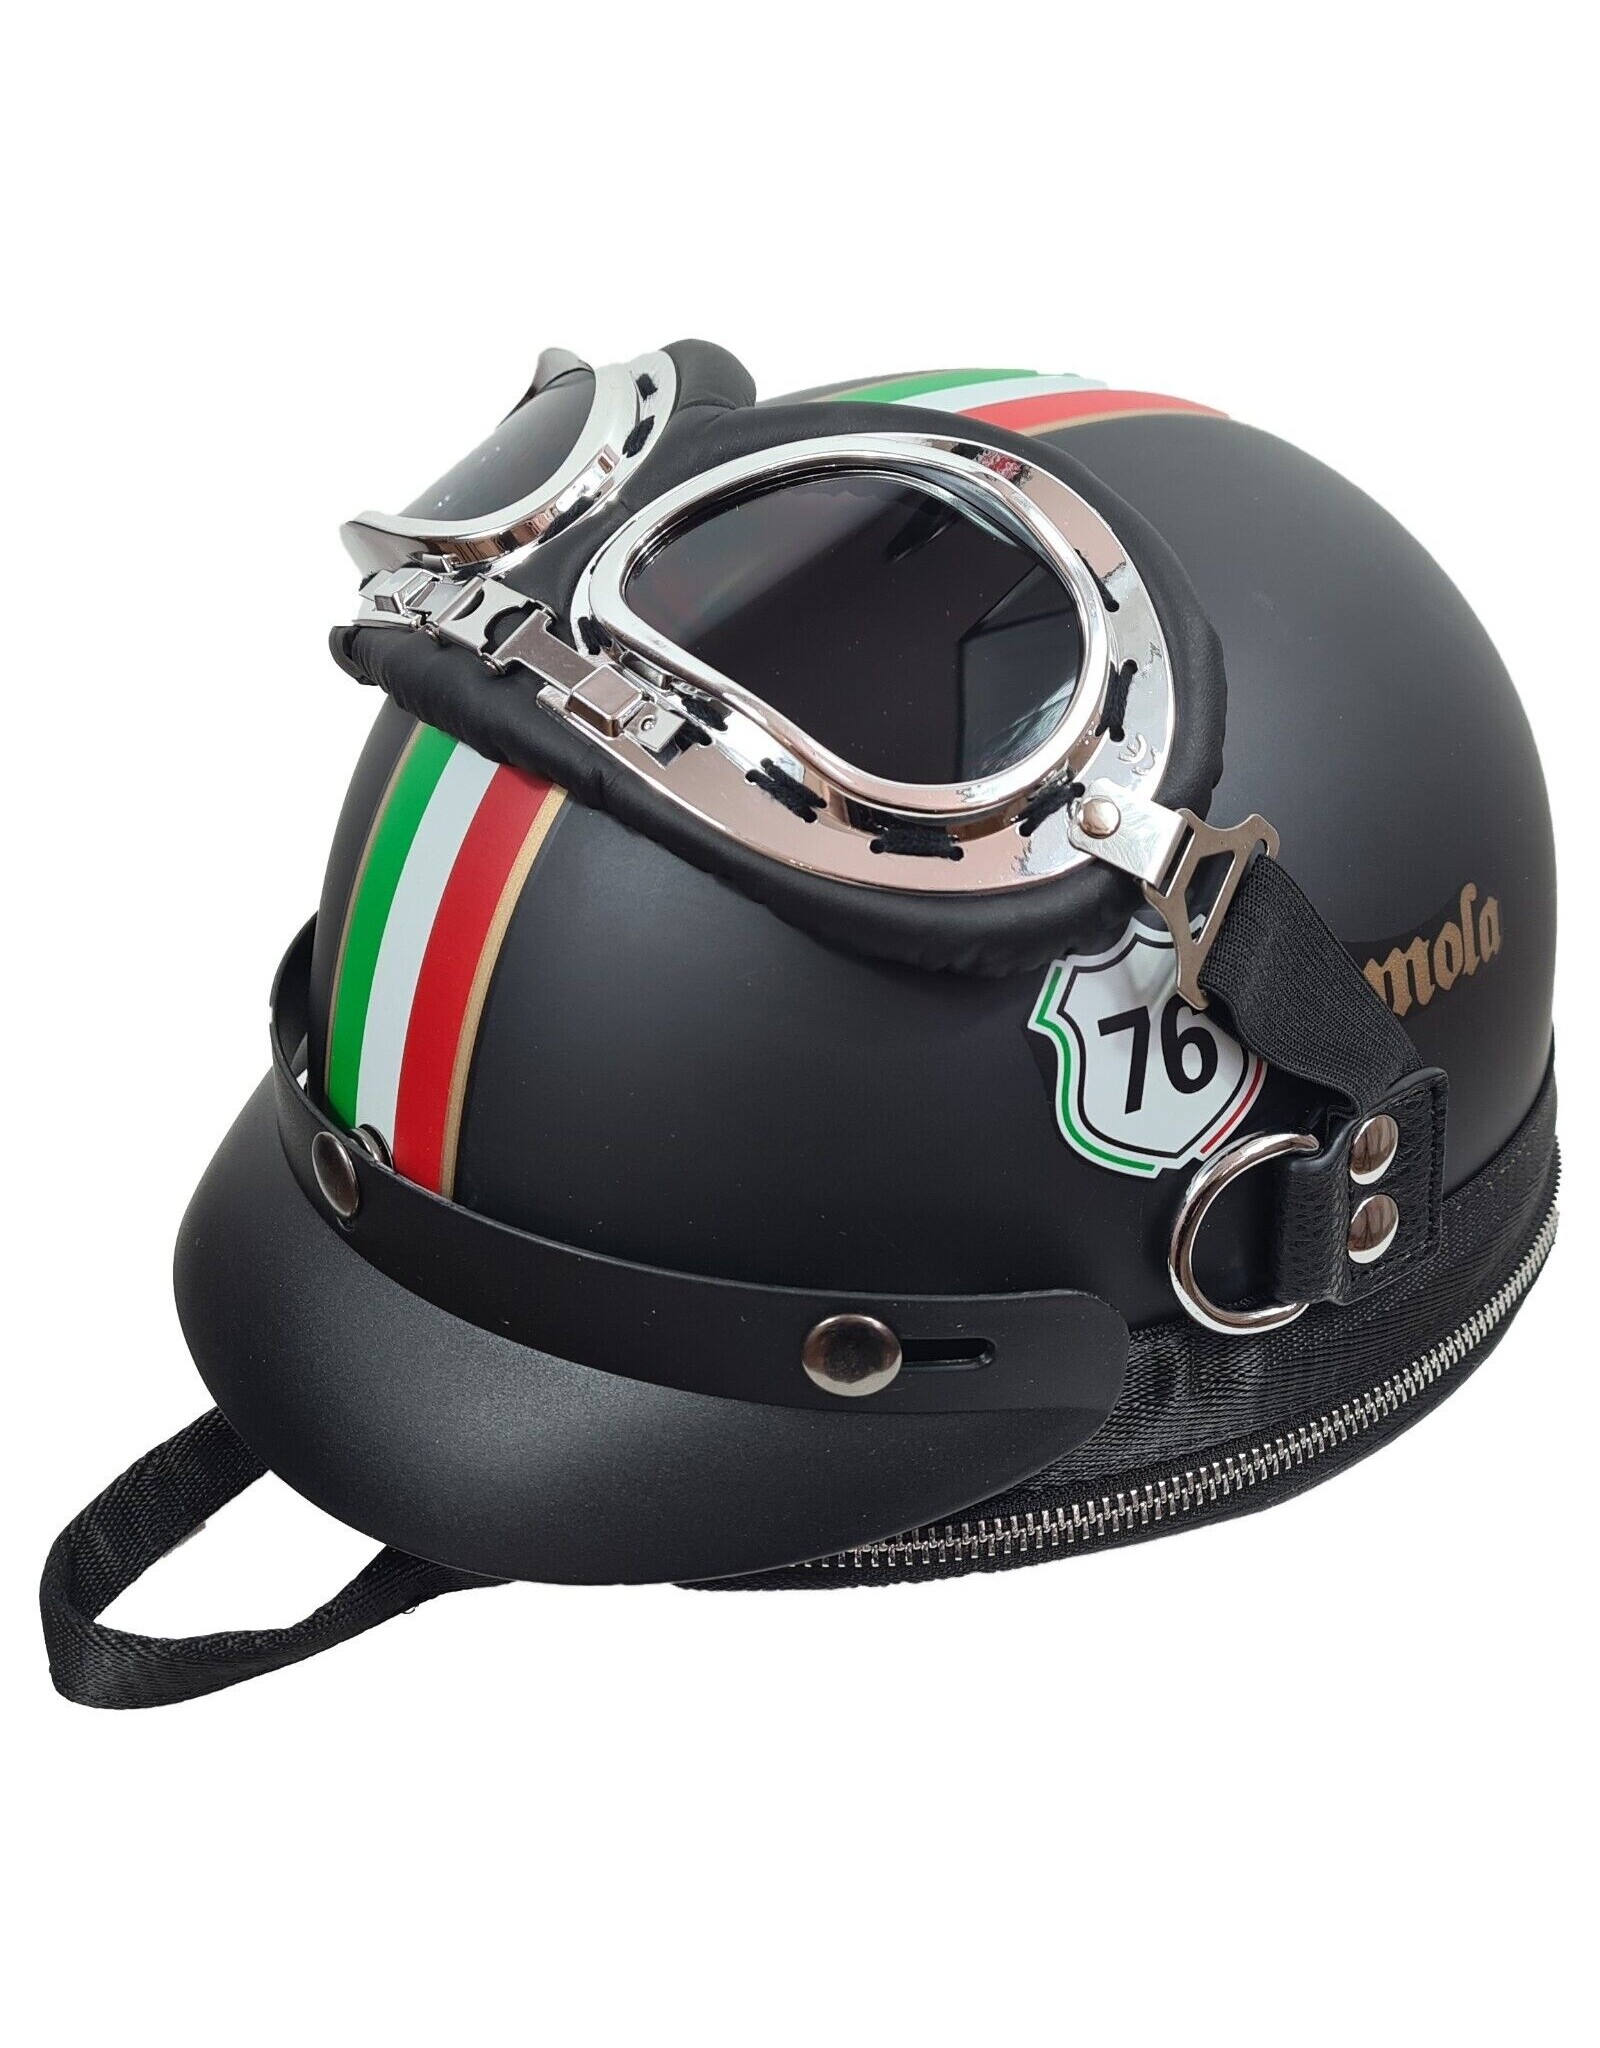 Taschen Helm Flag Italy, Motorradhelm, Rucksack, Schultertasche